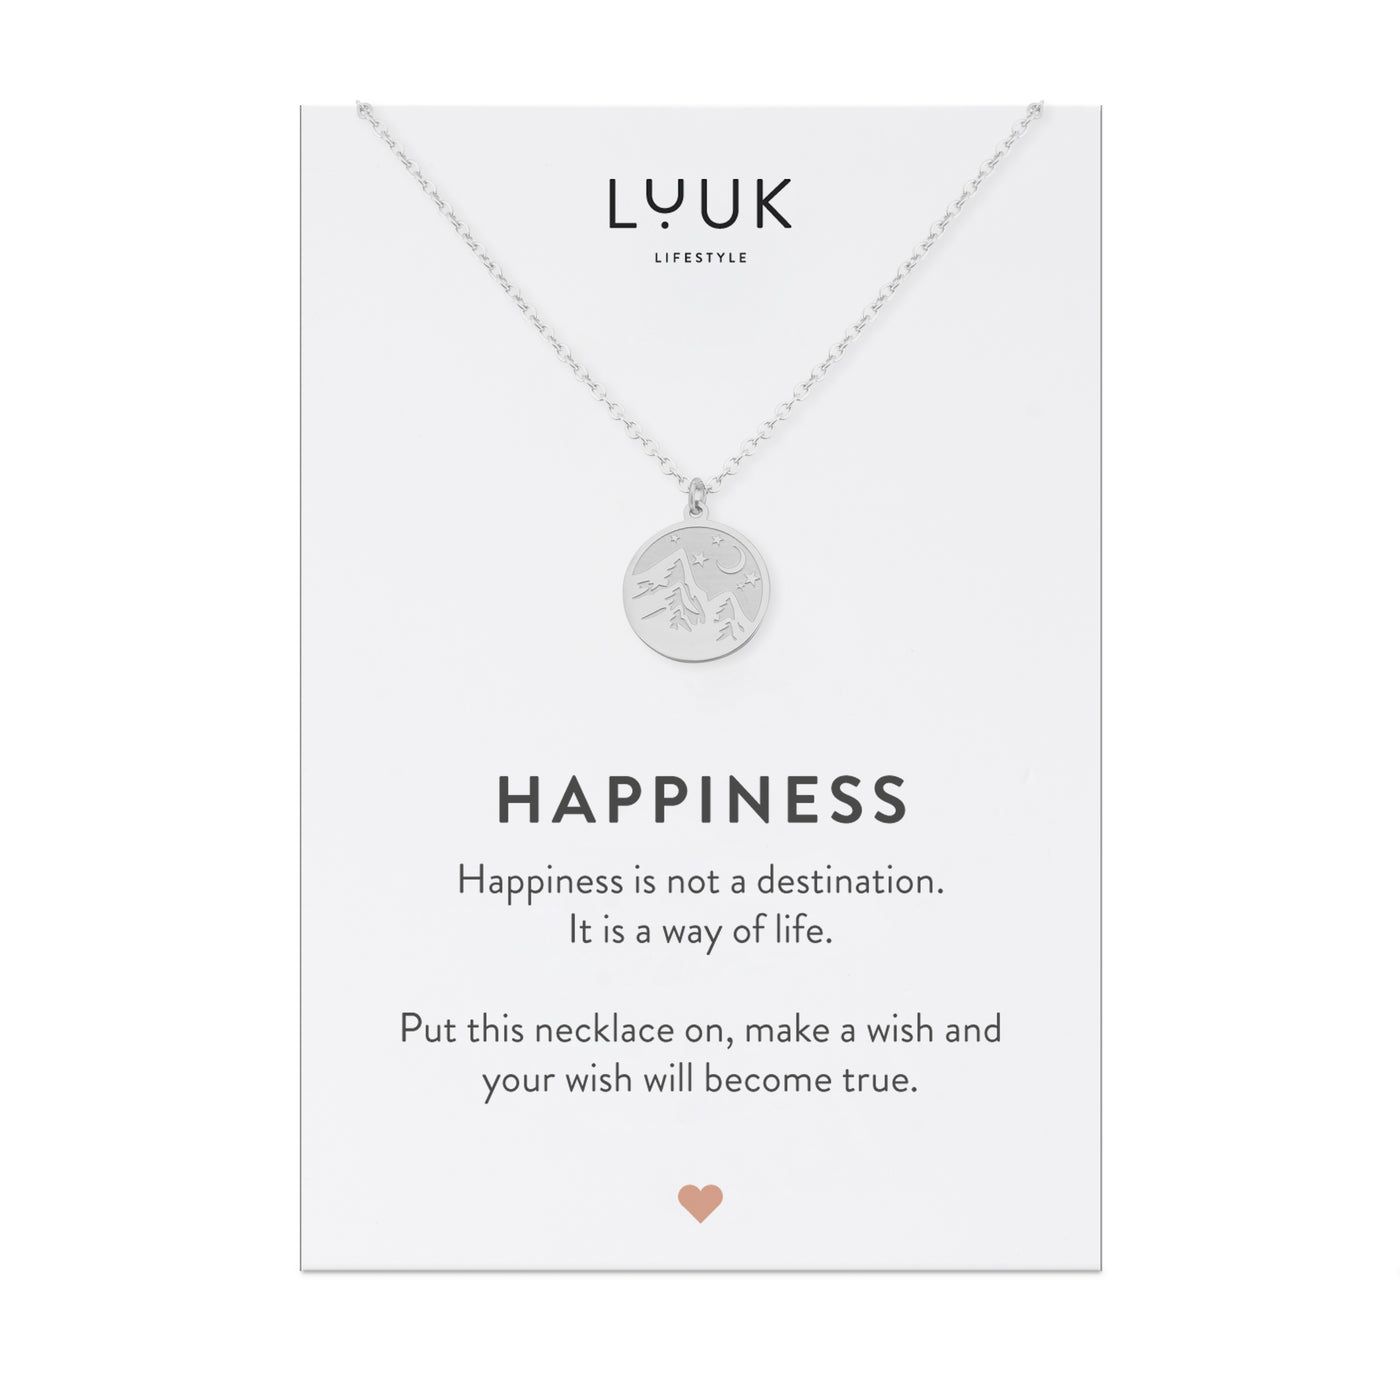 Silberne halskette mit Berg Plättchen Anhänger auf Happiness Spruchkarte von der Marke Luuk Lifestyle